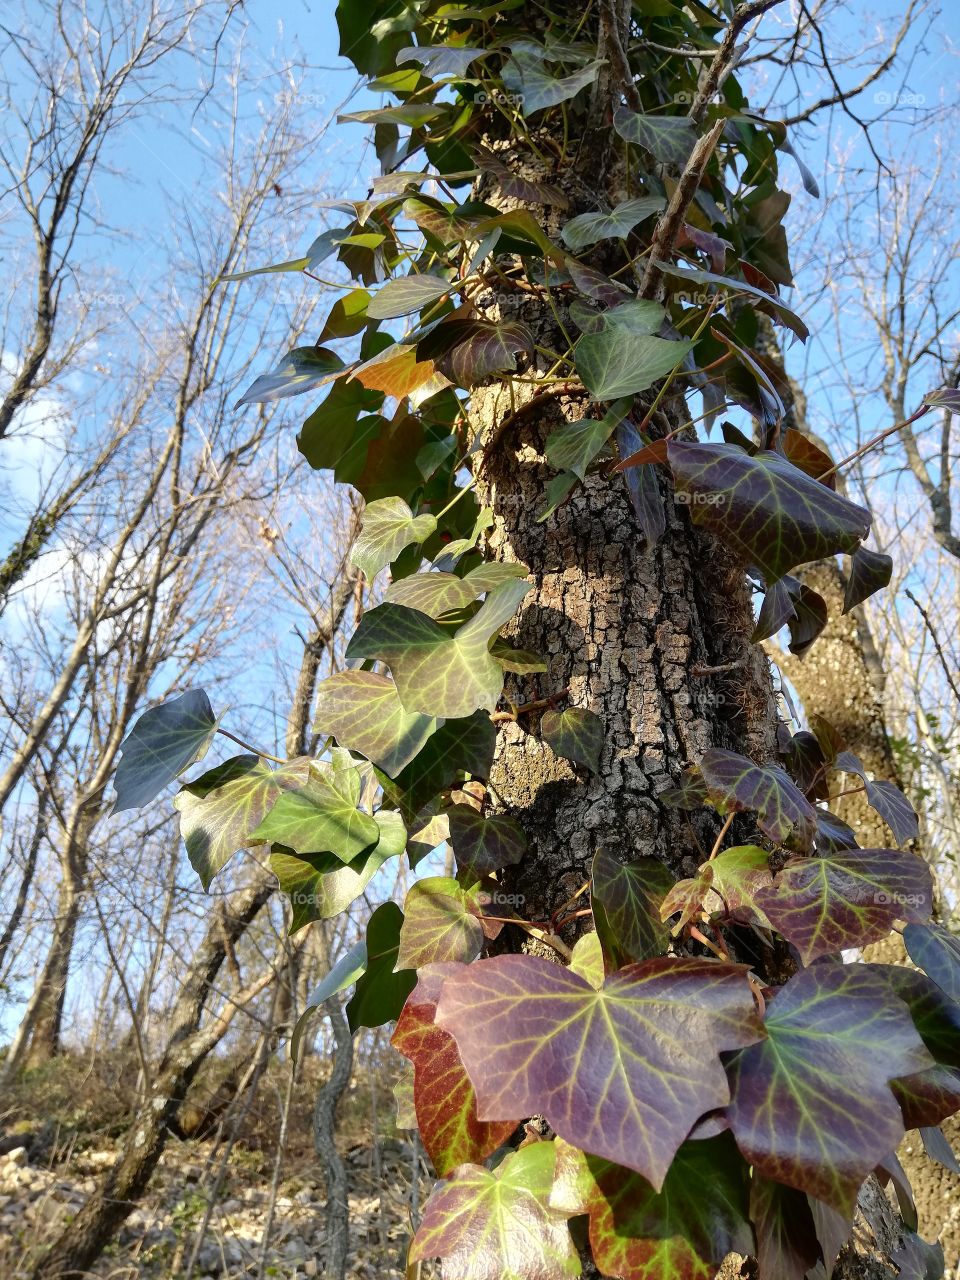 Ivy on oak trunk in winter